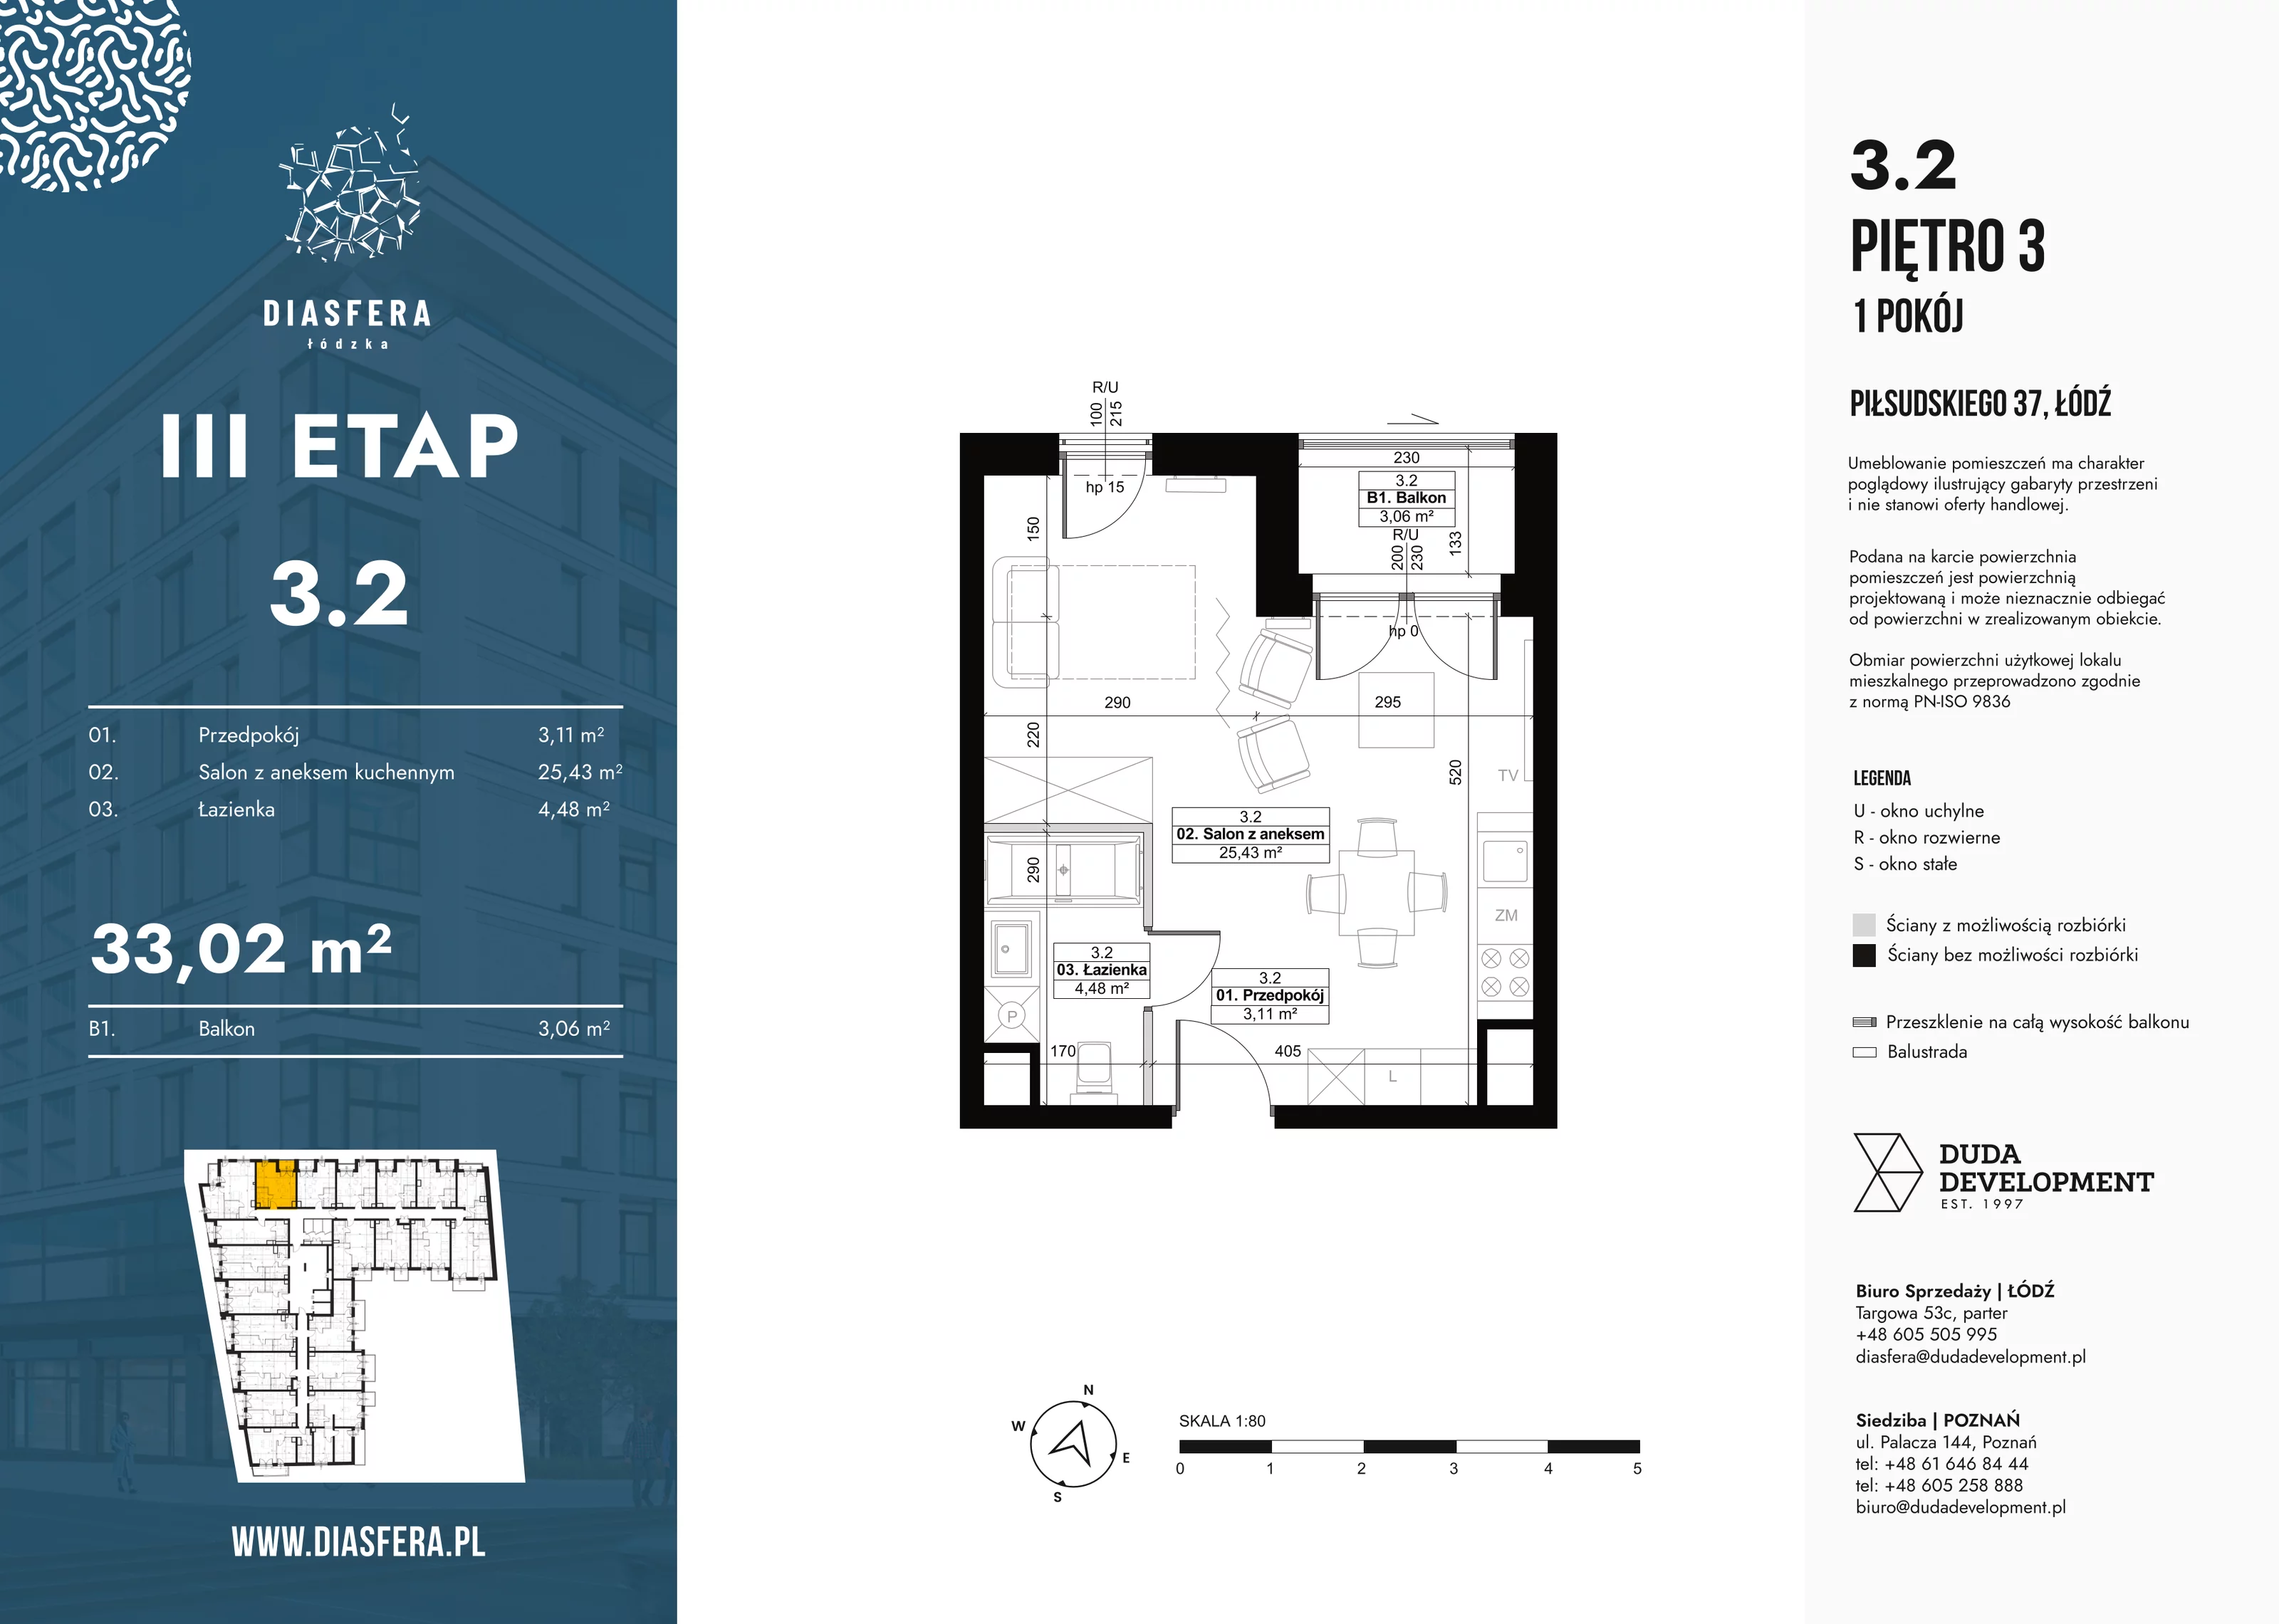 Mieszkanie 33,02 m², piętro 3, oferta nr 3_2, Diasfera III, Łódź, Śródmieście, al. Piłsudskiego 37